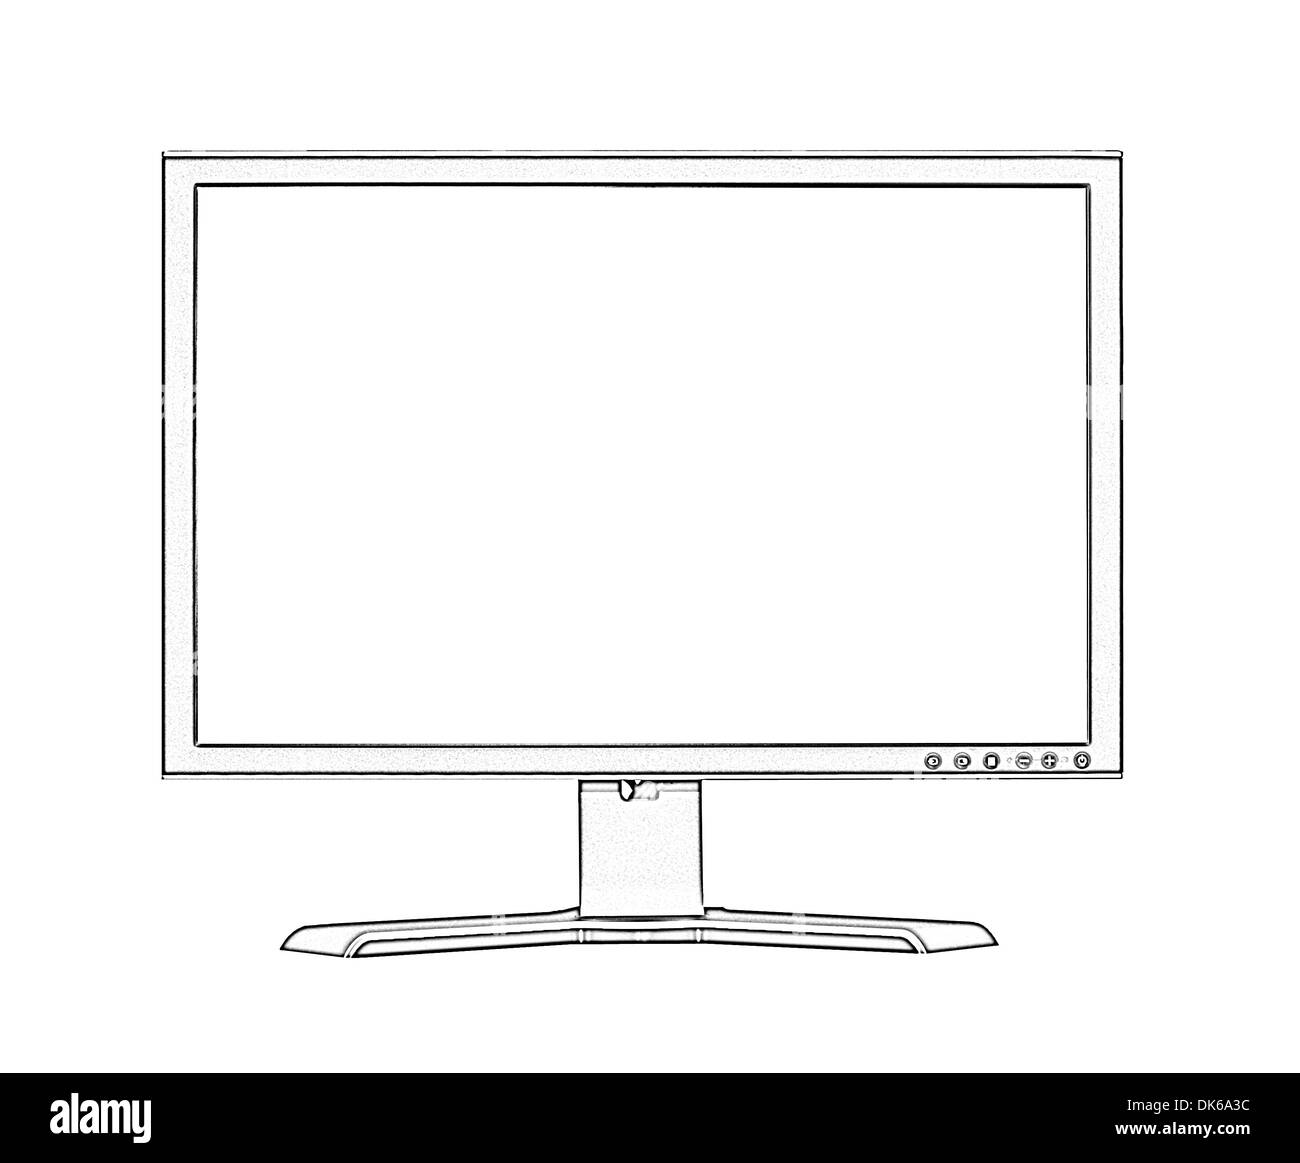 Abbildung von Breitbild-Flachbildschirm LCD-Monitor auf weißem Hintergrund Stockfoto